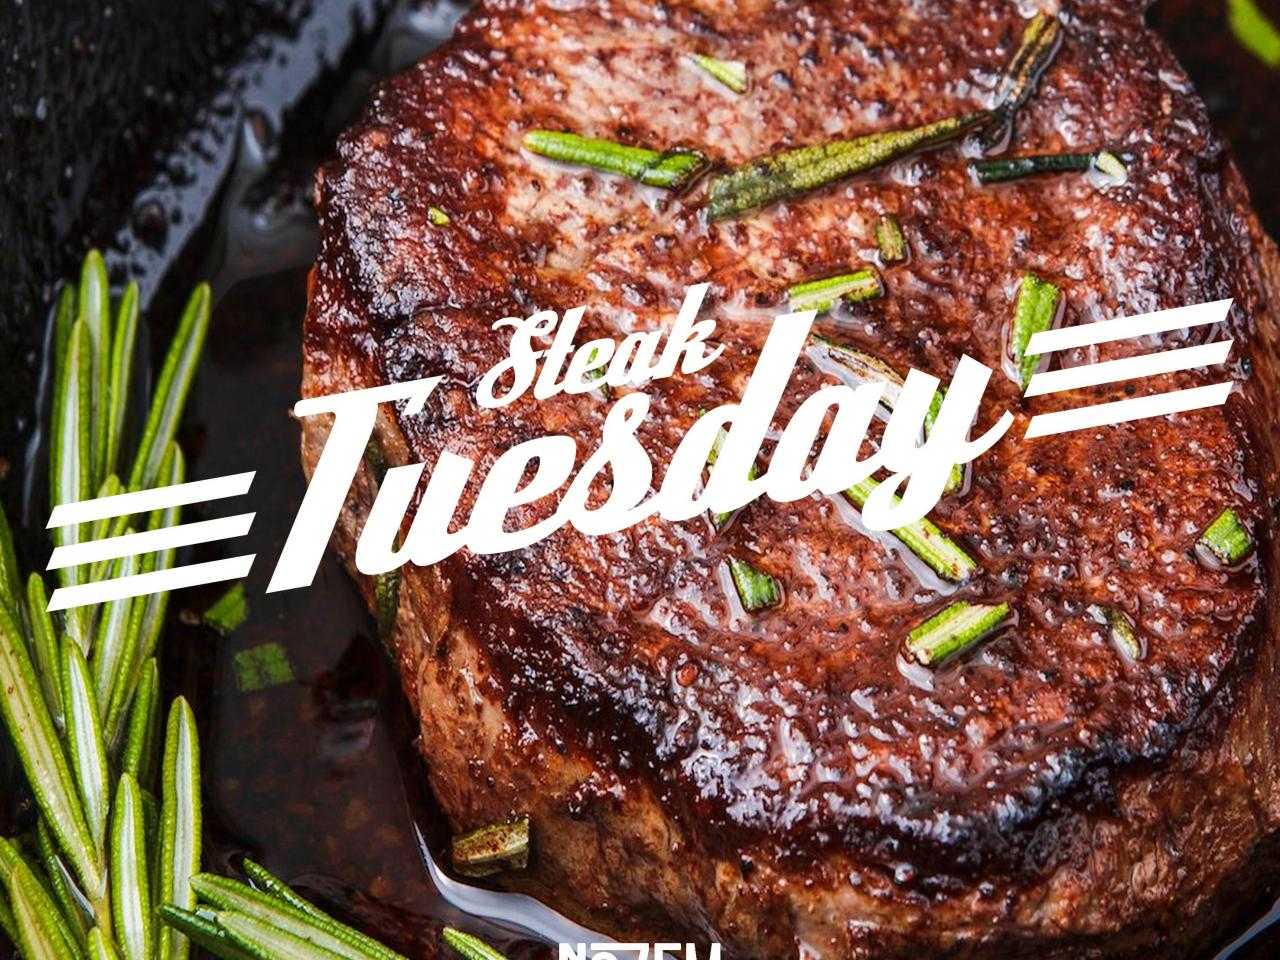 Steak met Steak Tuesday in beeld. 